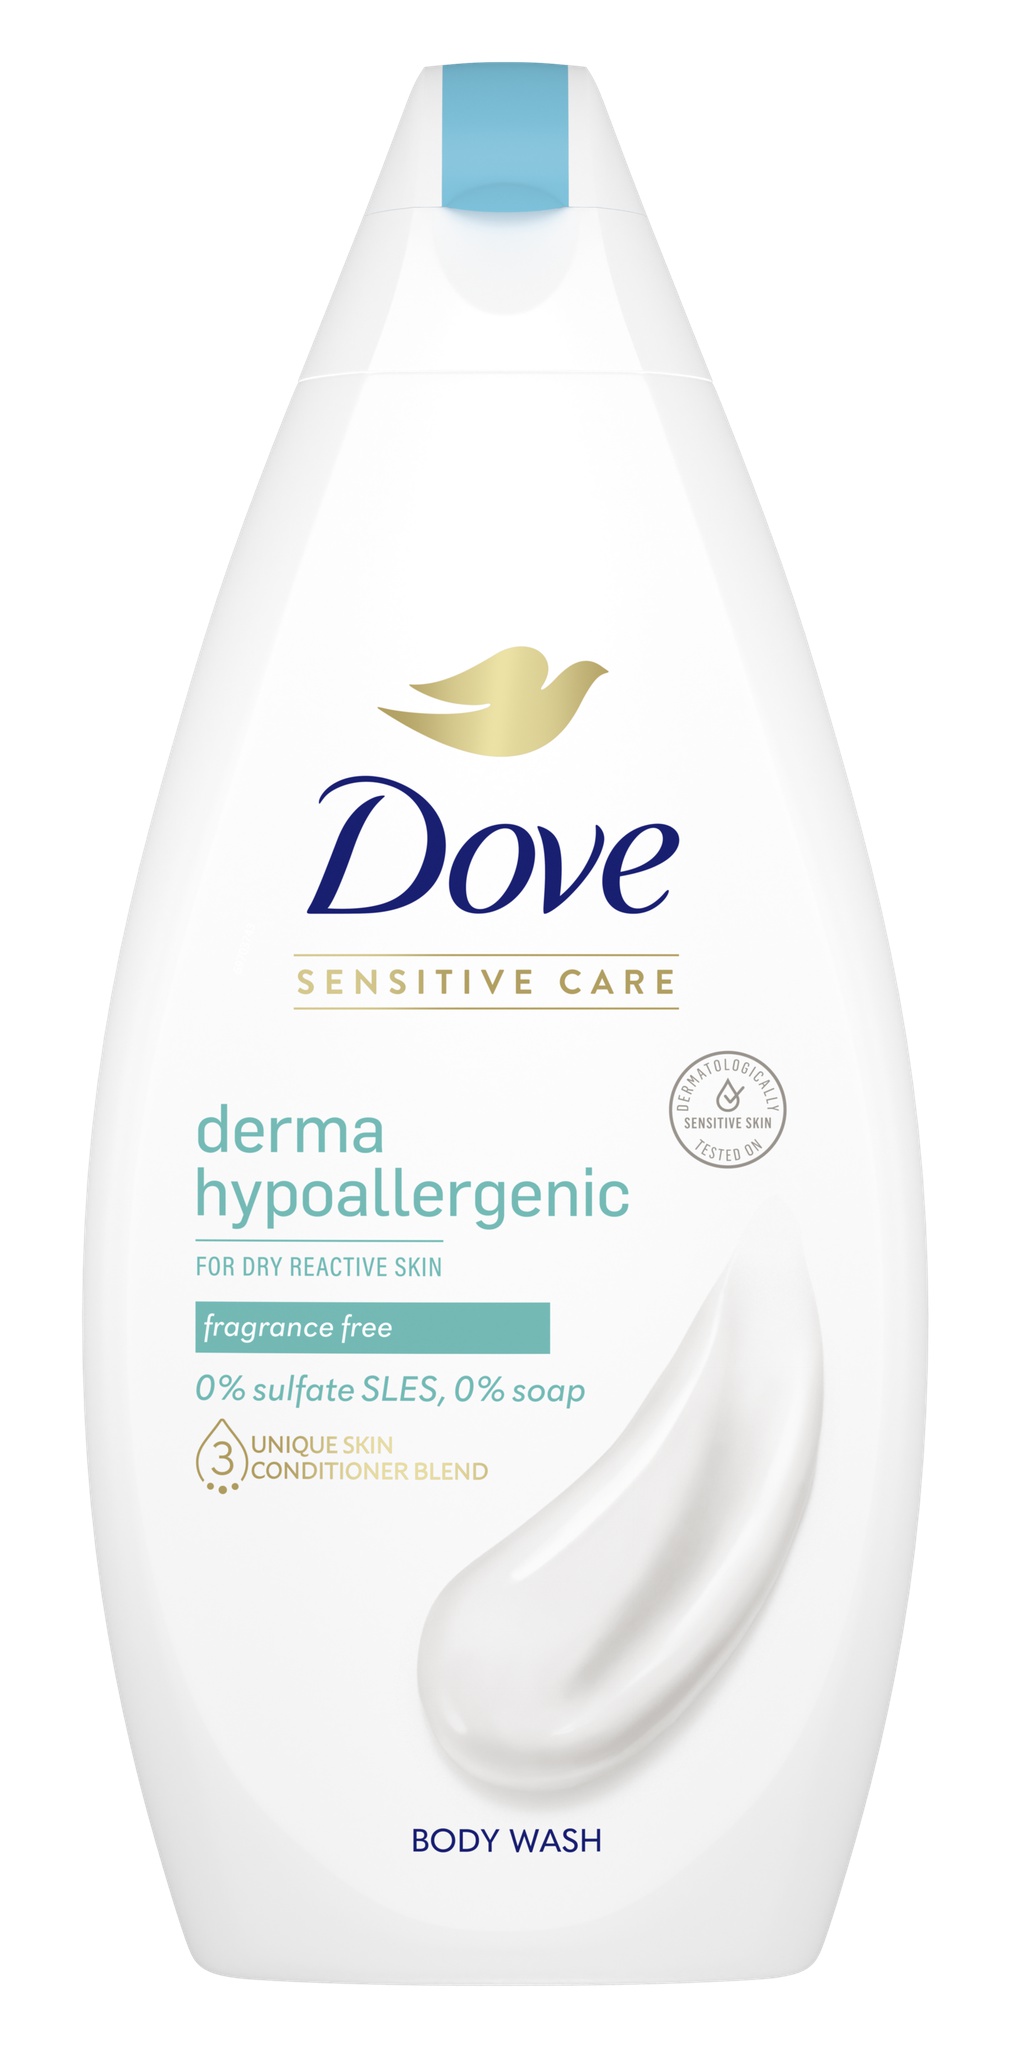 Dove Sensitive Care Derma Hypoallergenic Body Wash